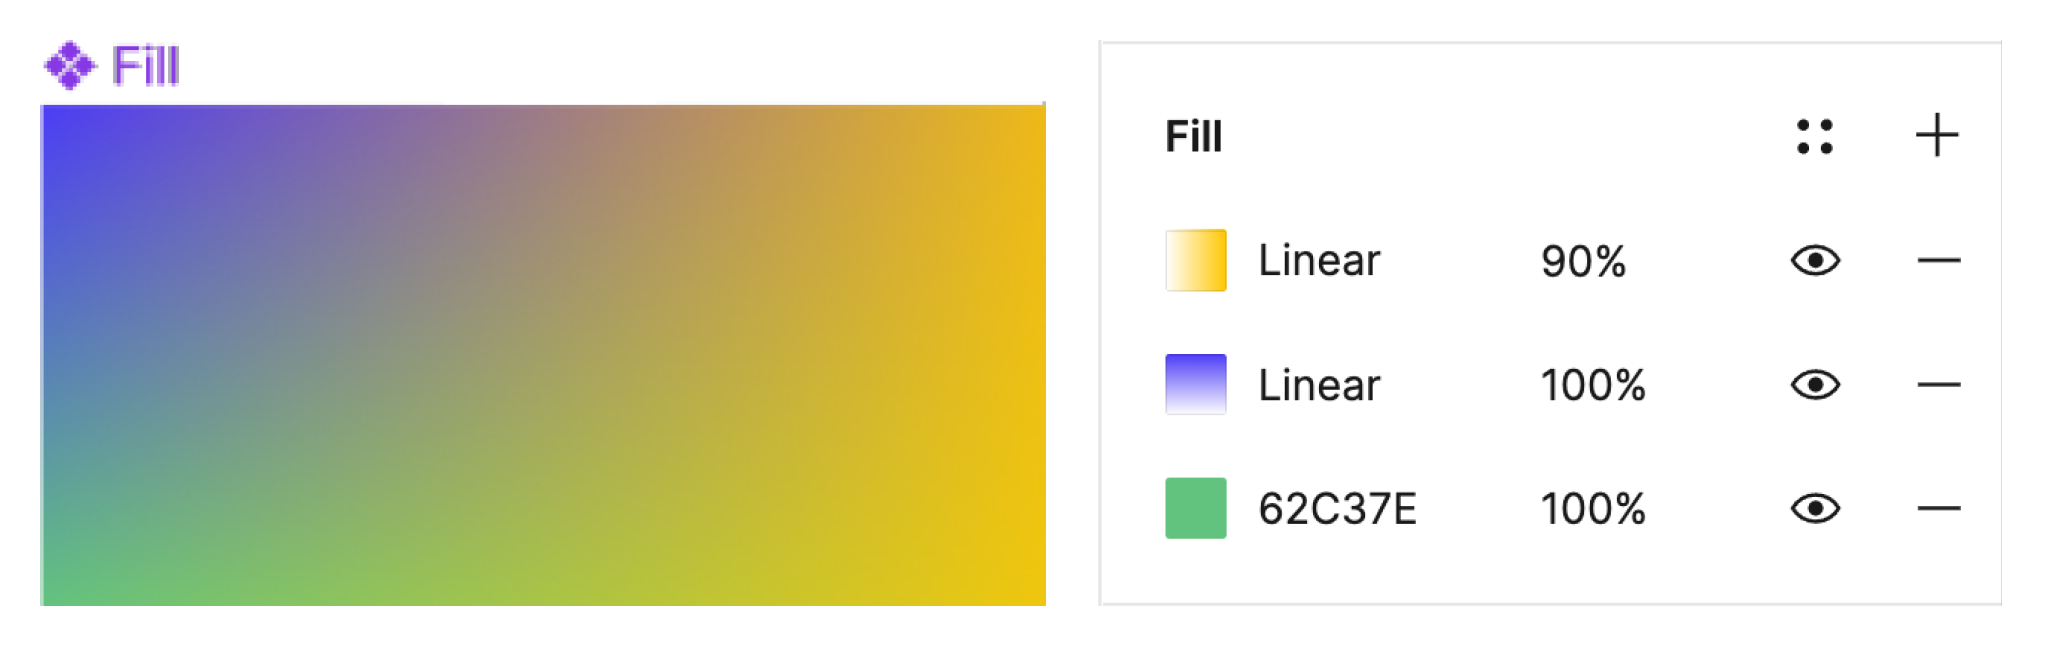 Rellenos múltiples y gradientes lineales en Figma